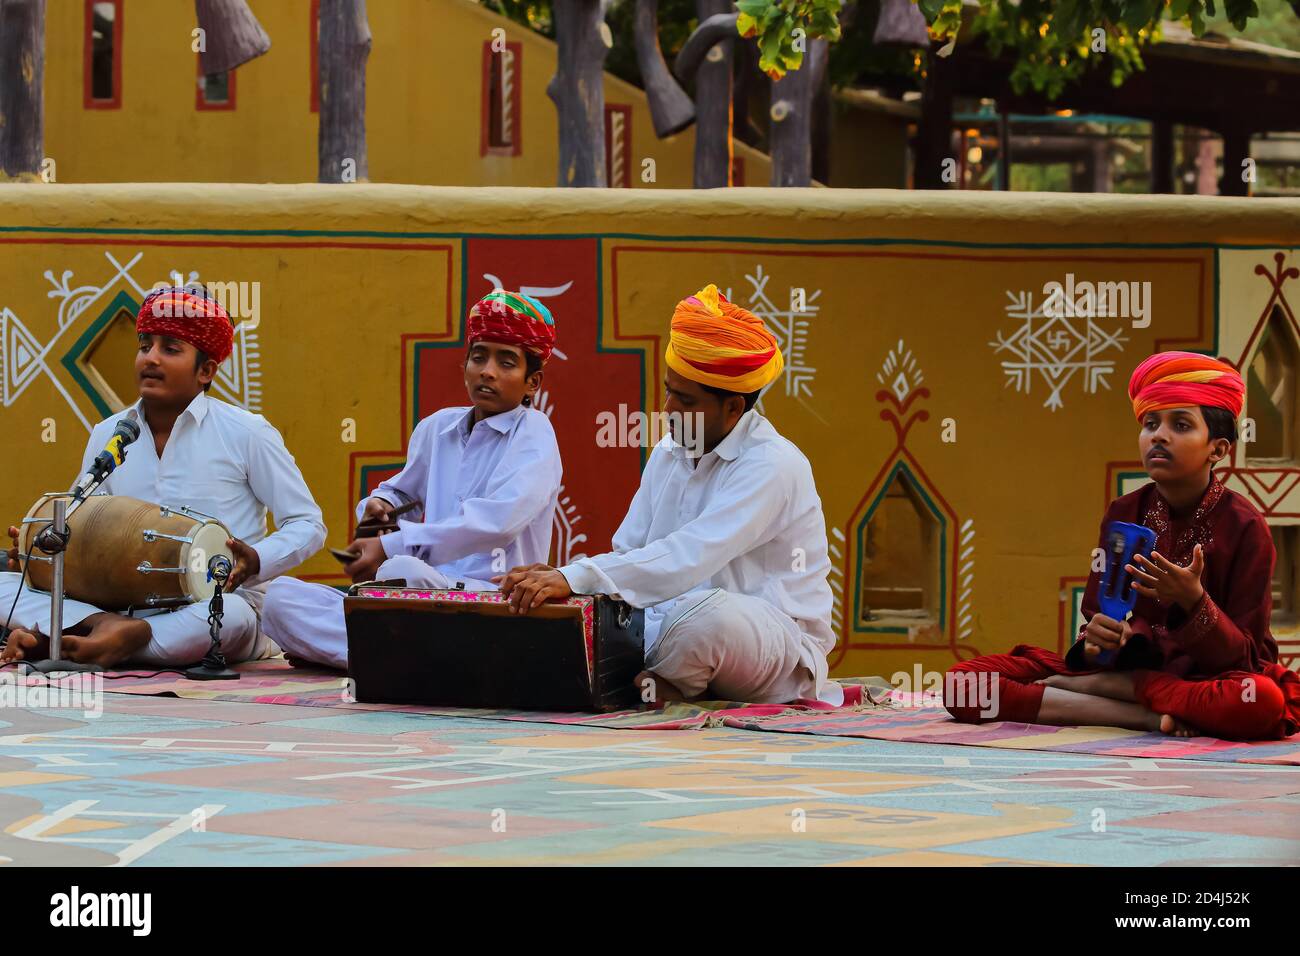 Rajasthani Männer in traditioneller Kleidung gekleidet spielen Volksmusik in Jaipur Rajasthan, Indien am 01. November 2017 Stockfoto